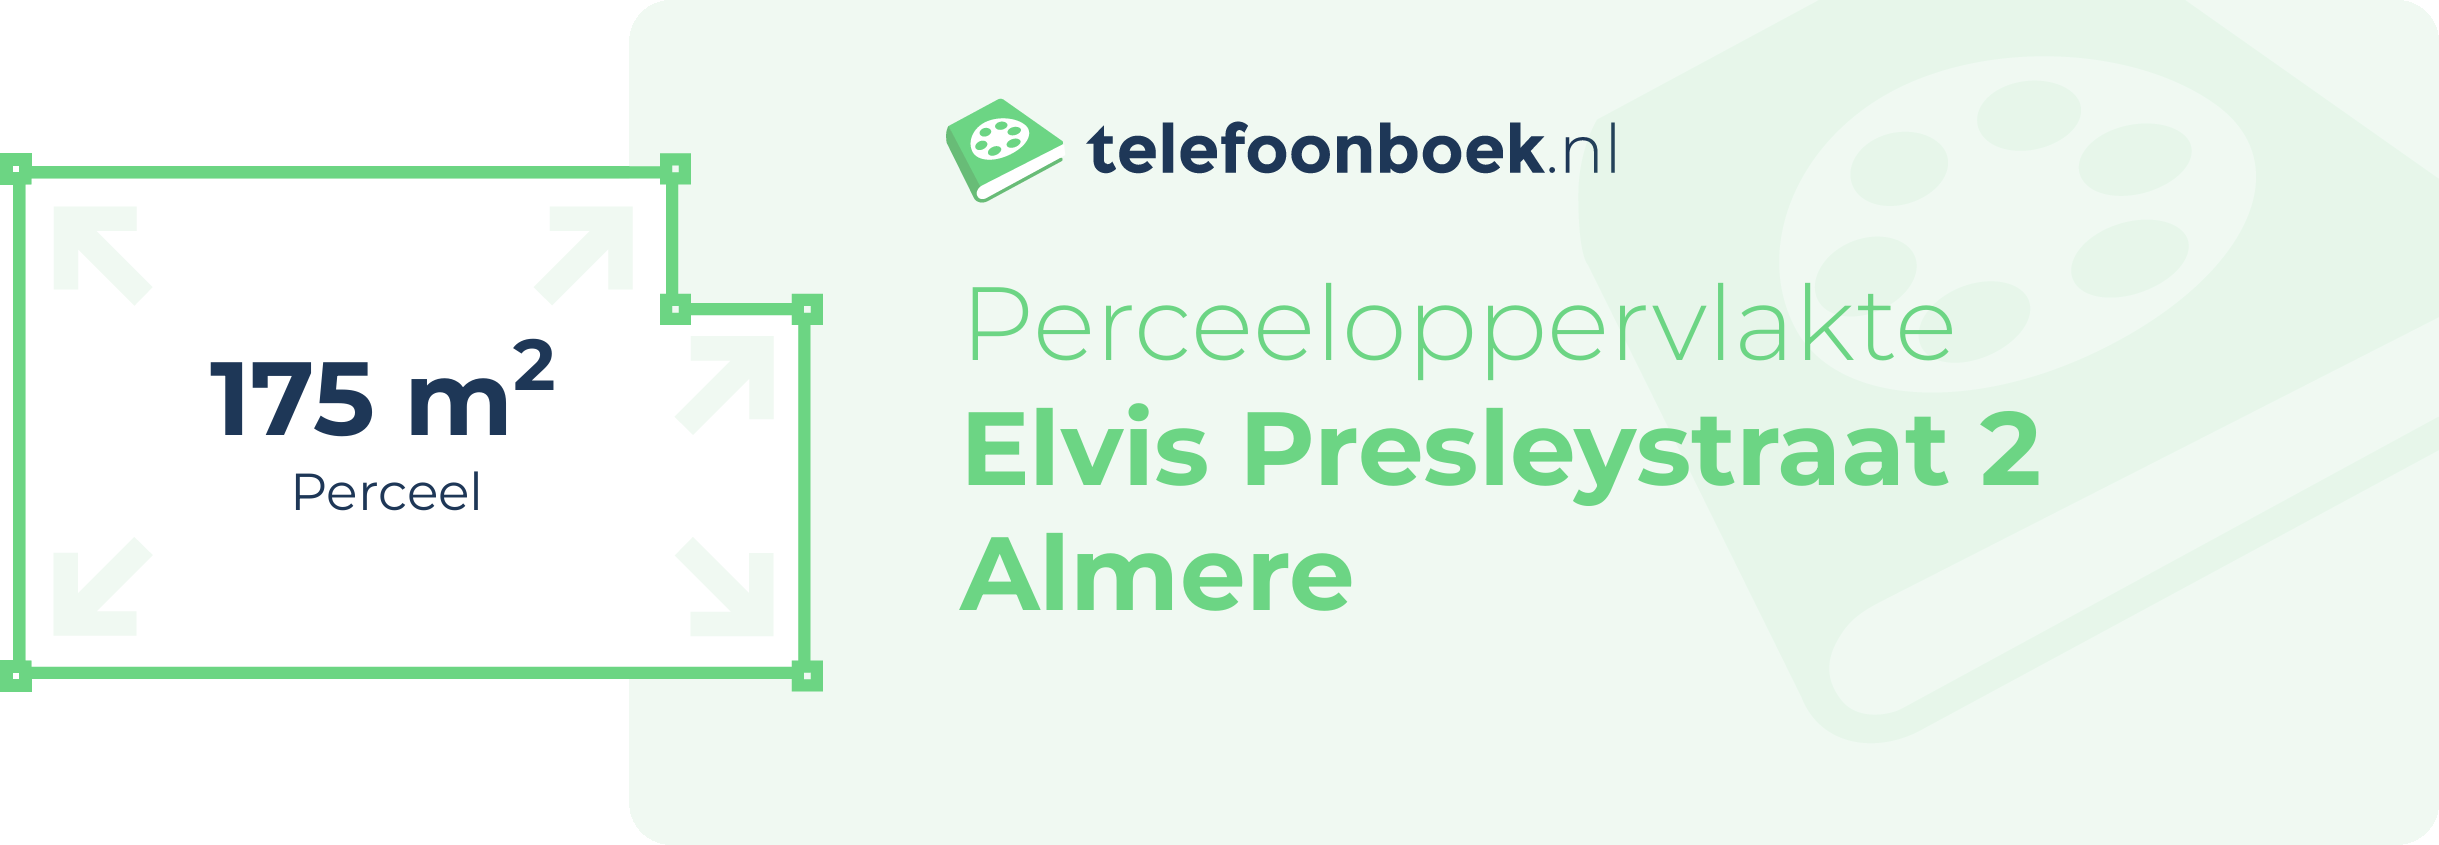 Perceeloppervlakte Elvis Presleystraat 2 Almere